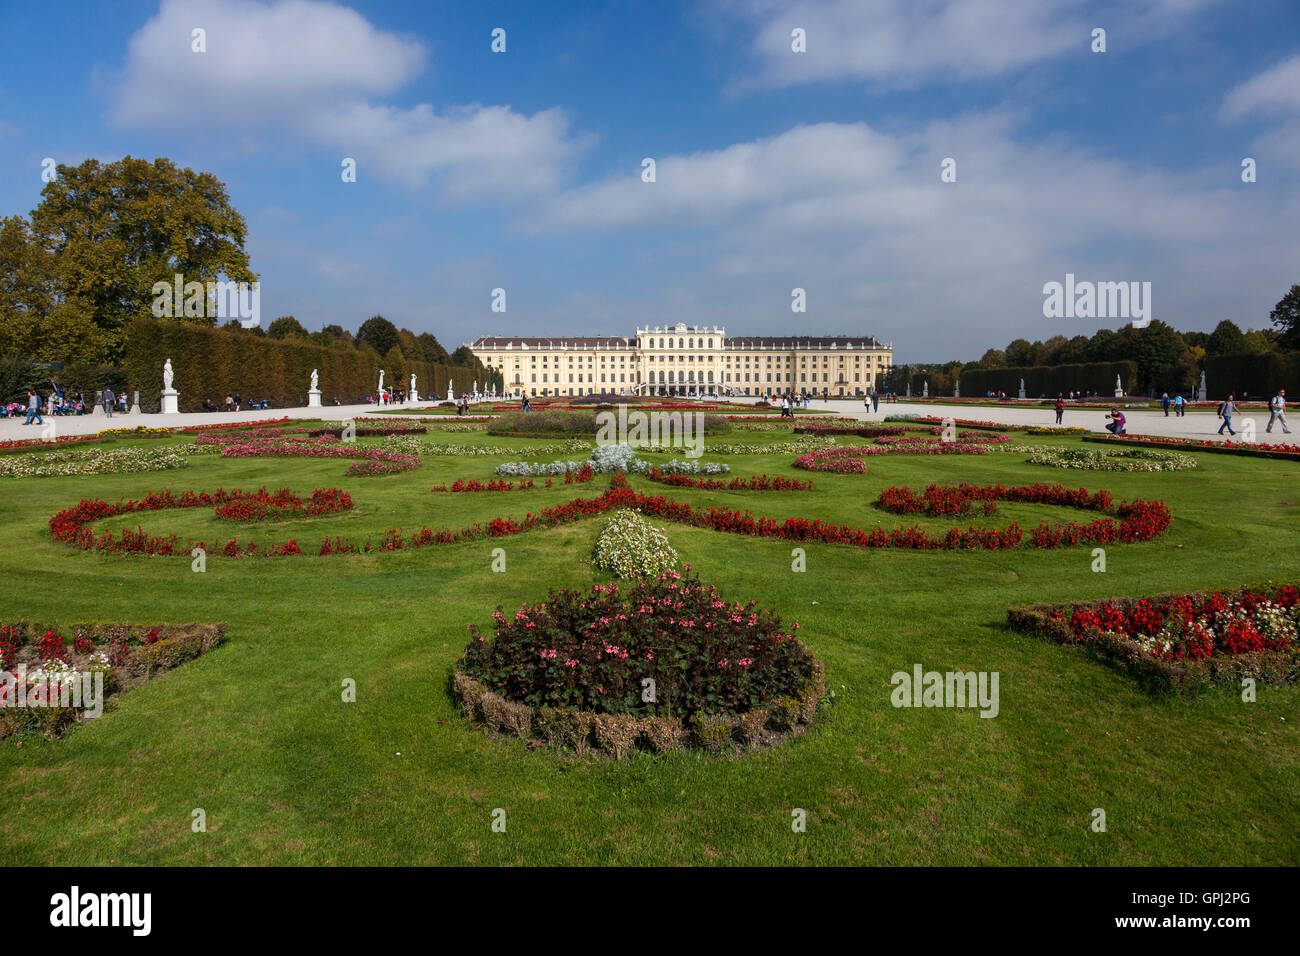 Garden of Schönbrunn Palace in Vienna, Austria Stock Photo